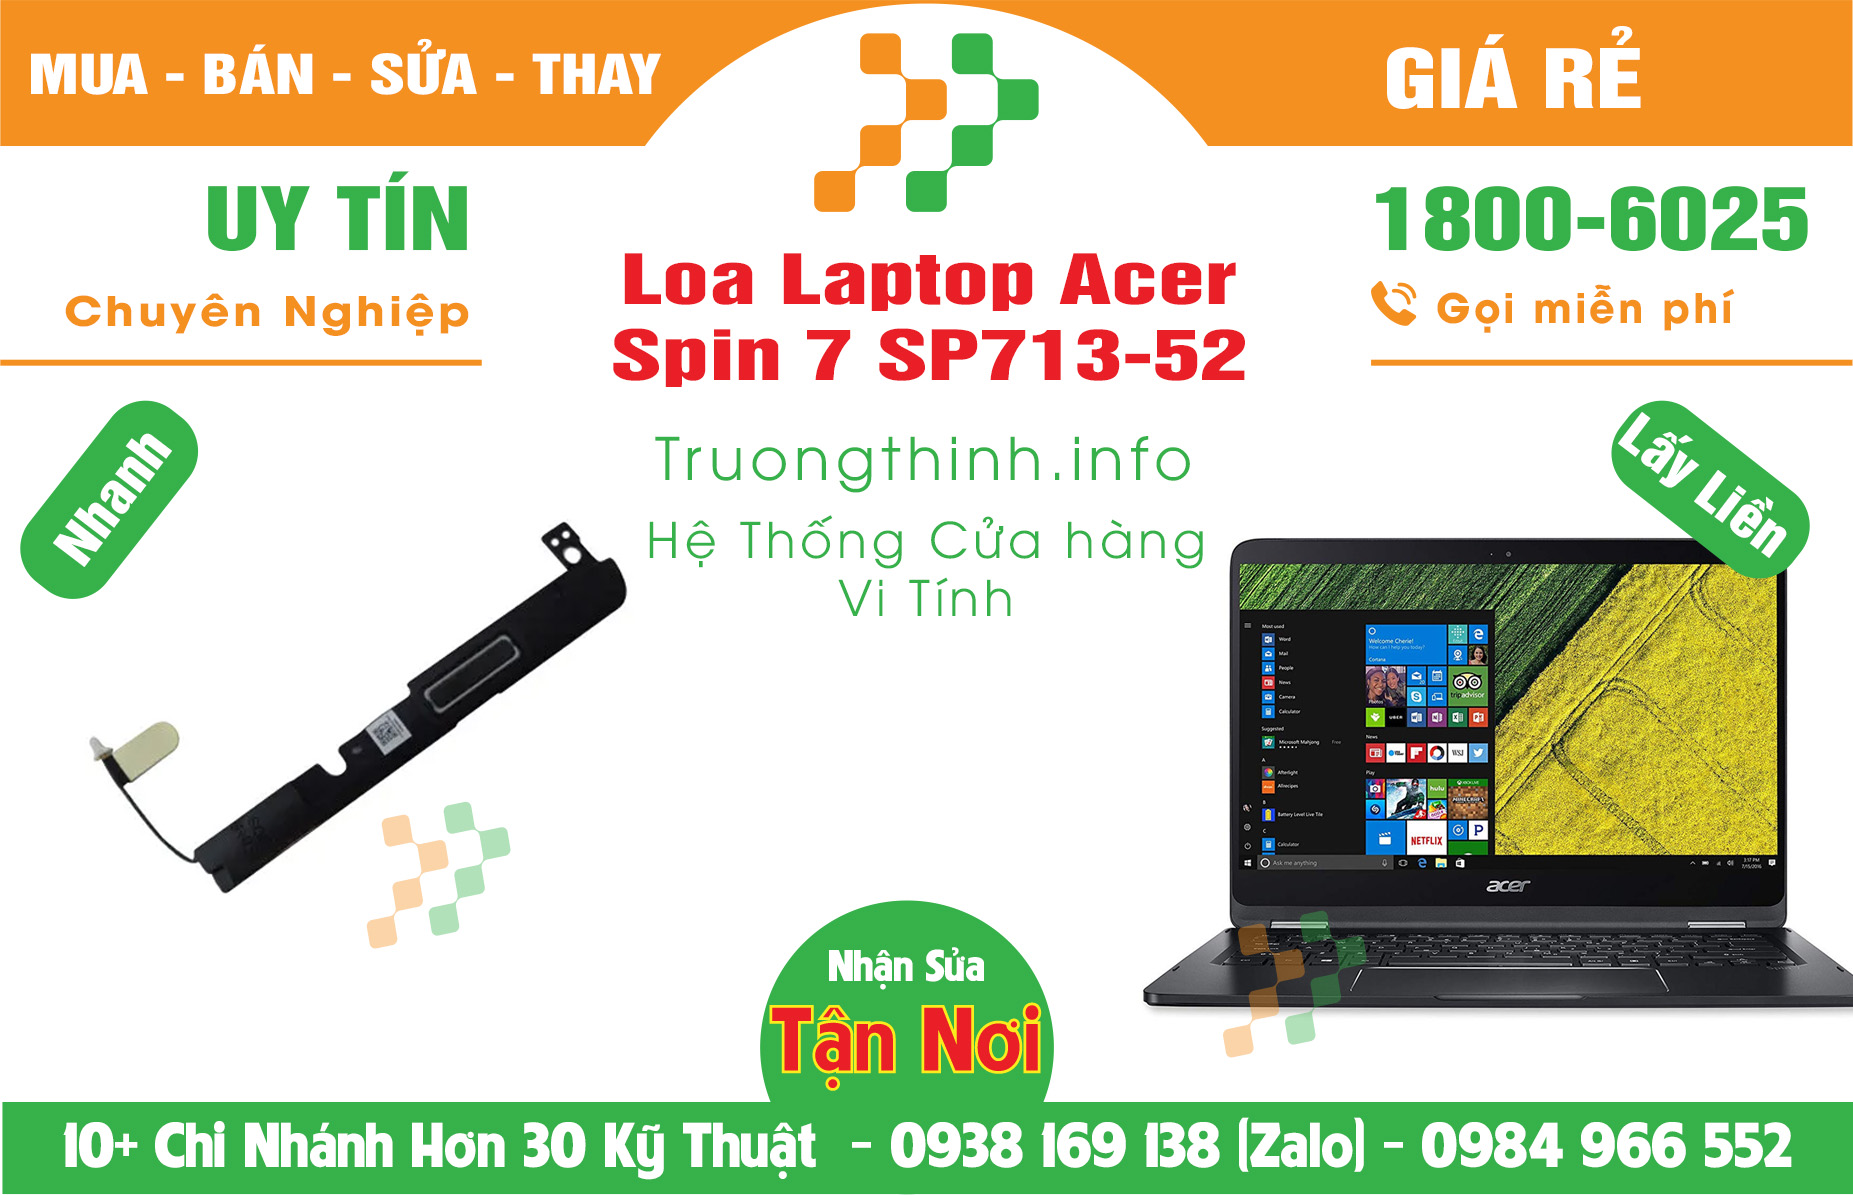 Mua Bán Loa Laptop Acer Spin 7 SP713-52 Giá Rẻ | Máy Tính Trường Thịnh Giá Rẻ